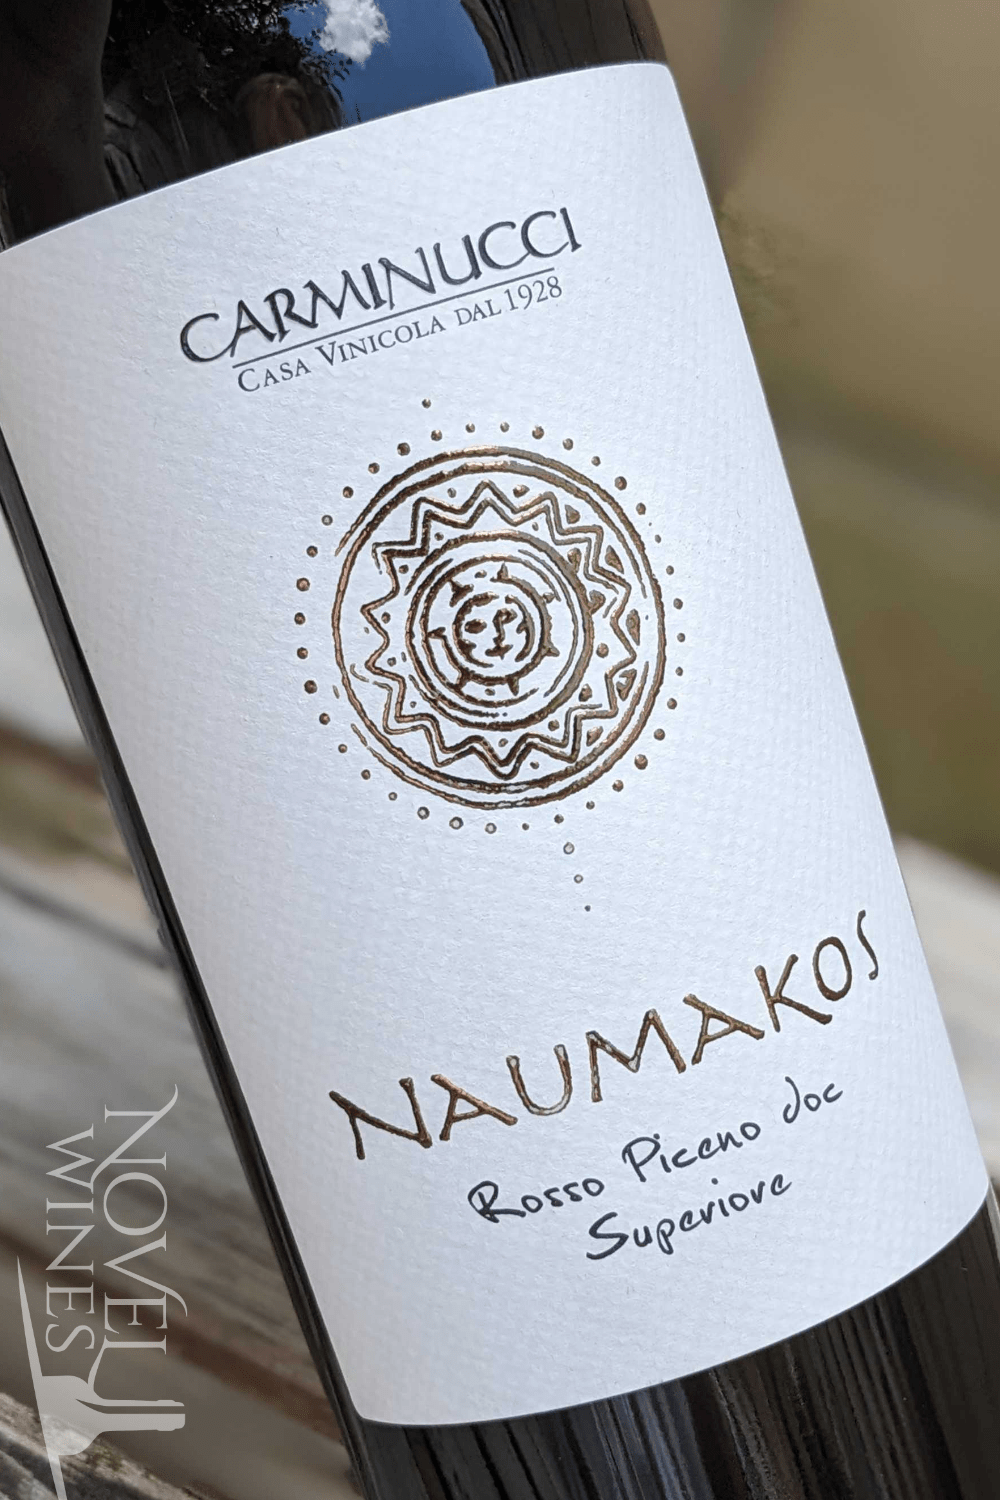 Carminucci Red Wine Carminucci 'Naumakos' Rosso Piceno Superiore 2019, Italy